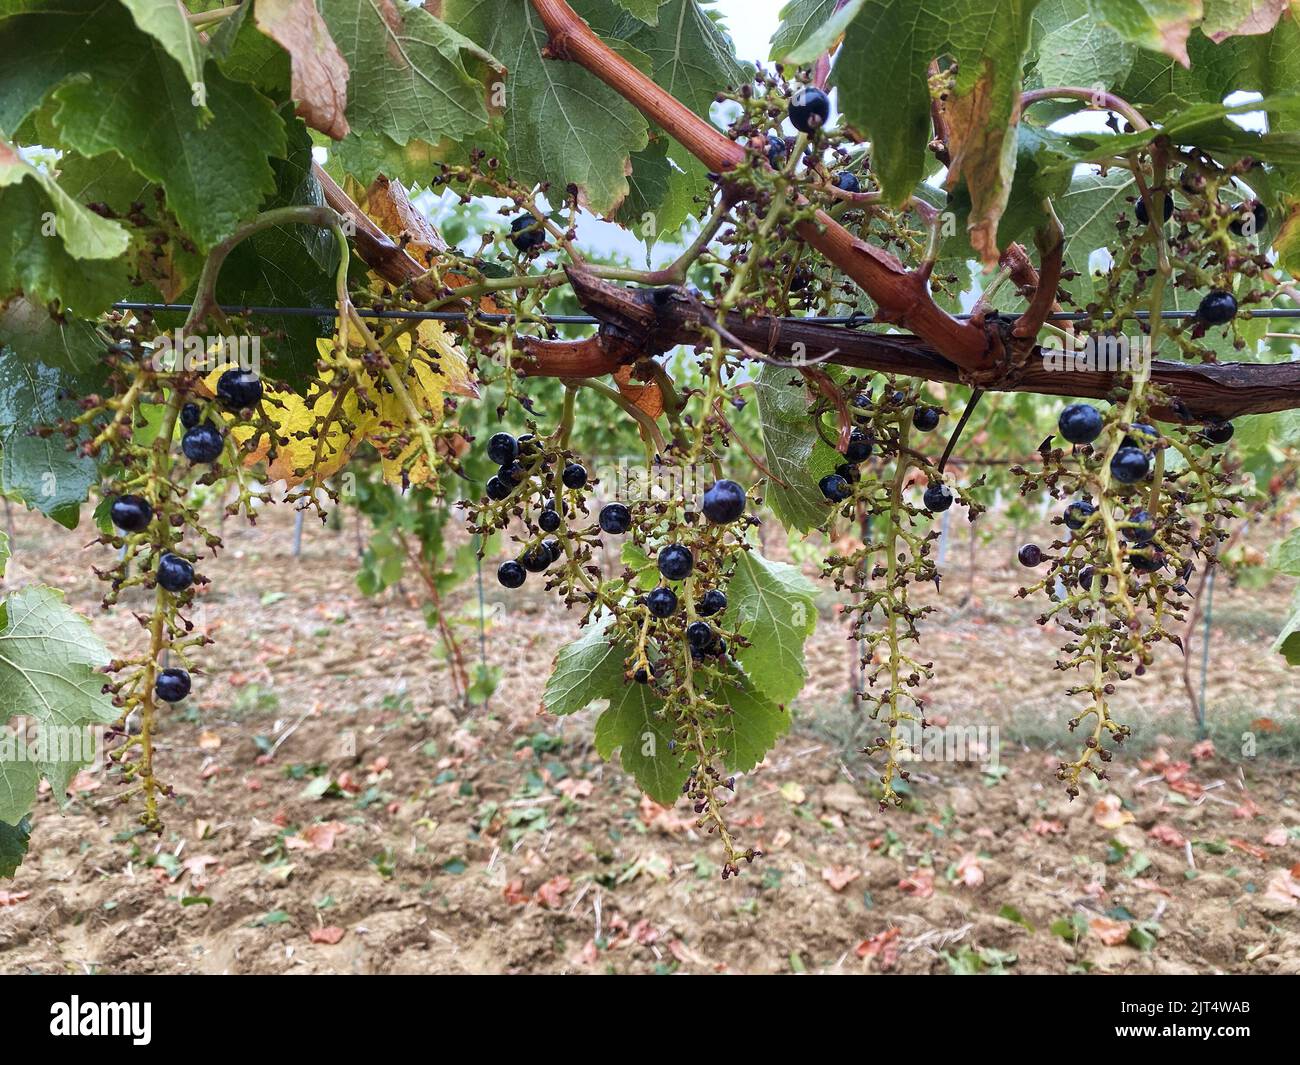 vendanges grapes merlot mechanized harvesting Stock Photo